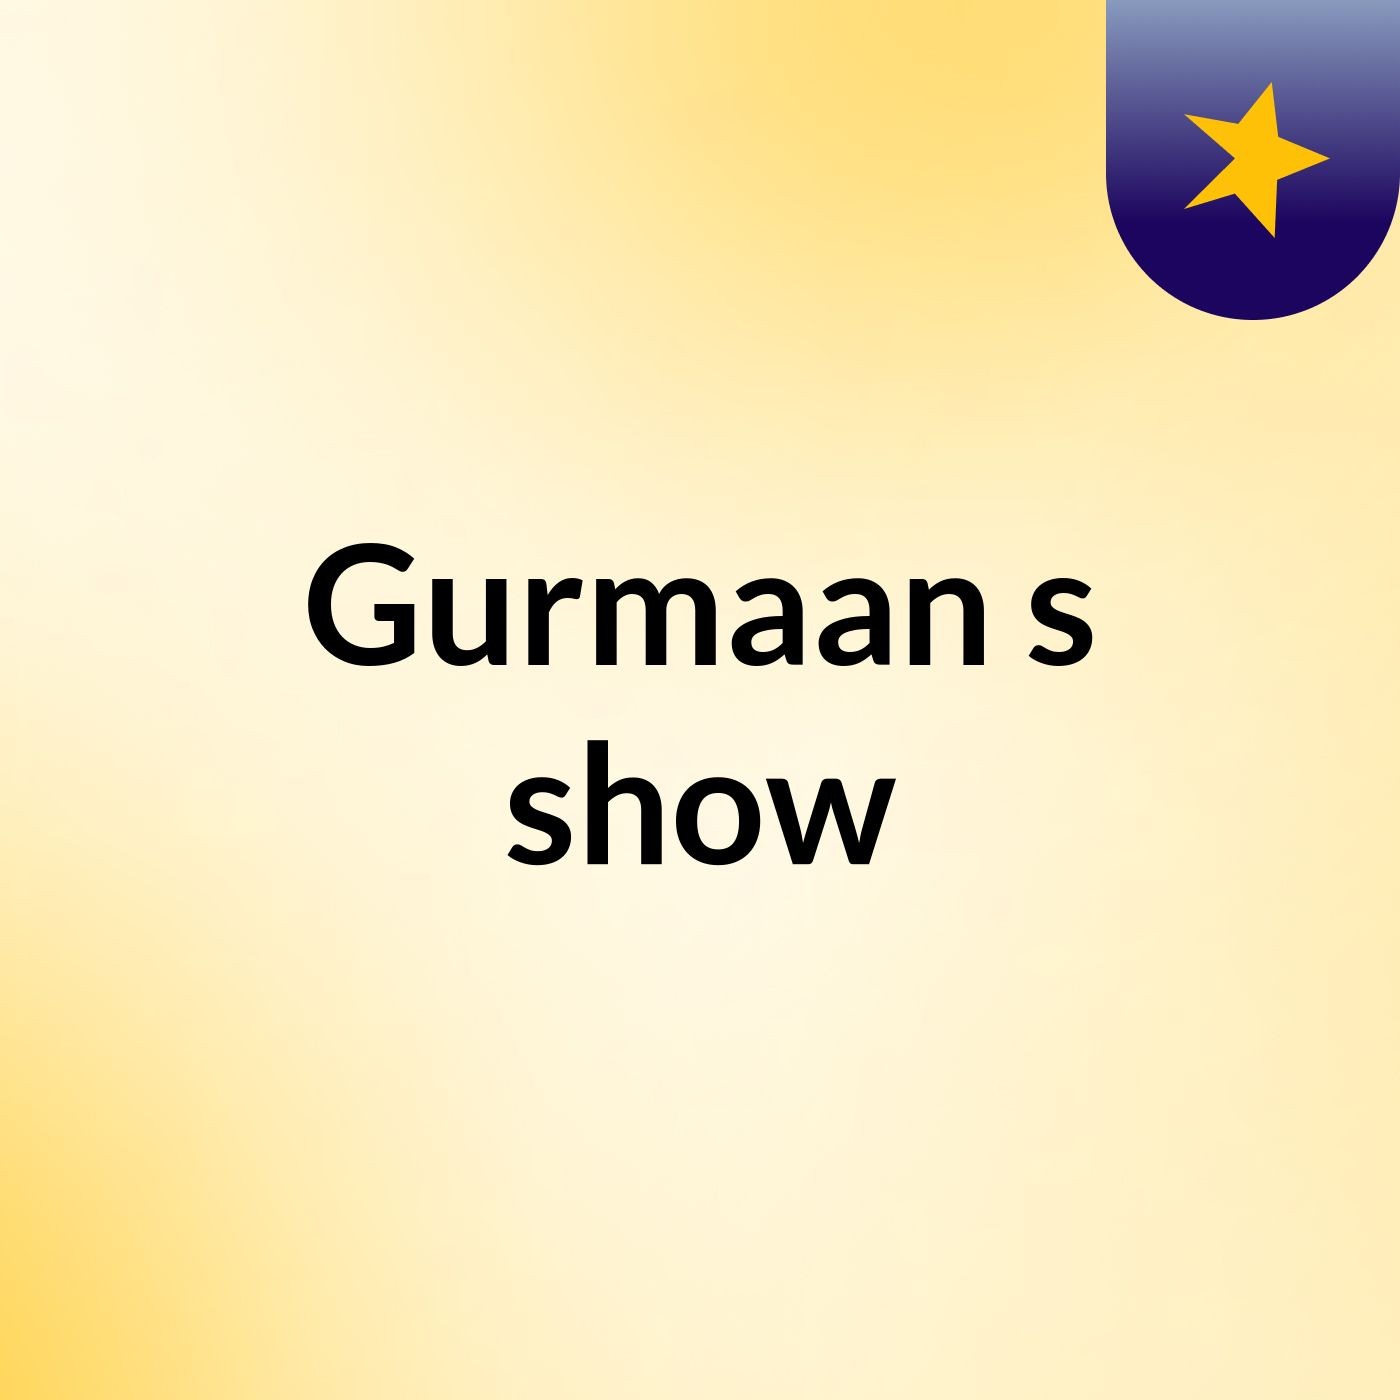 Gurmaan's show